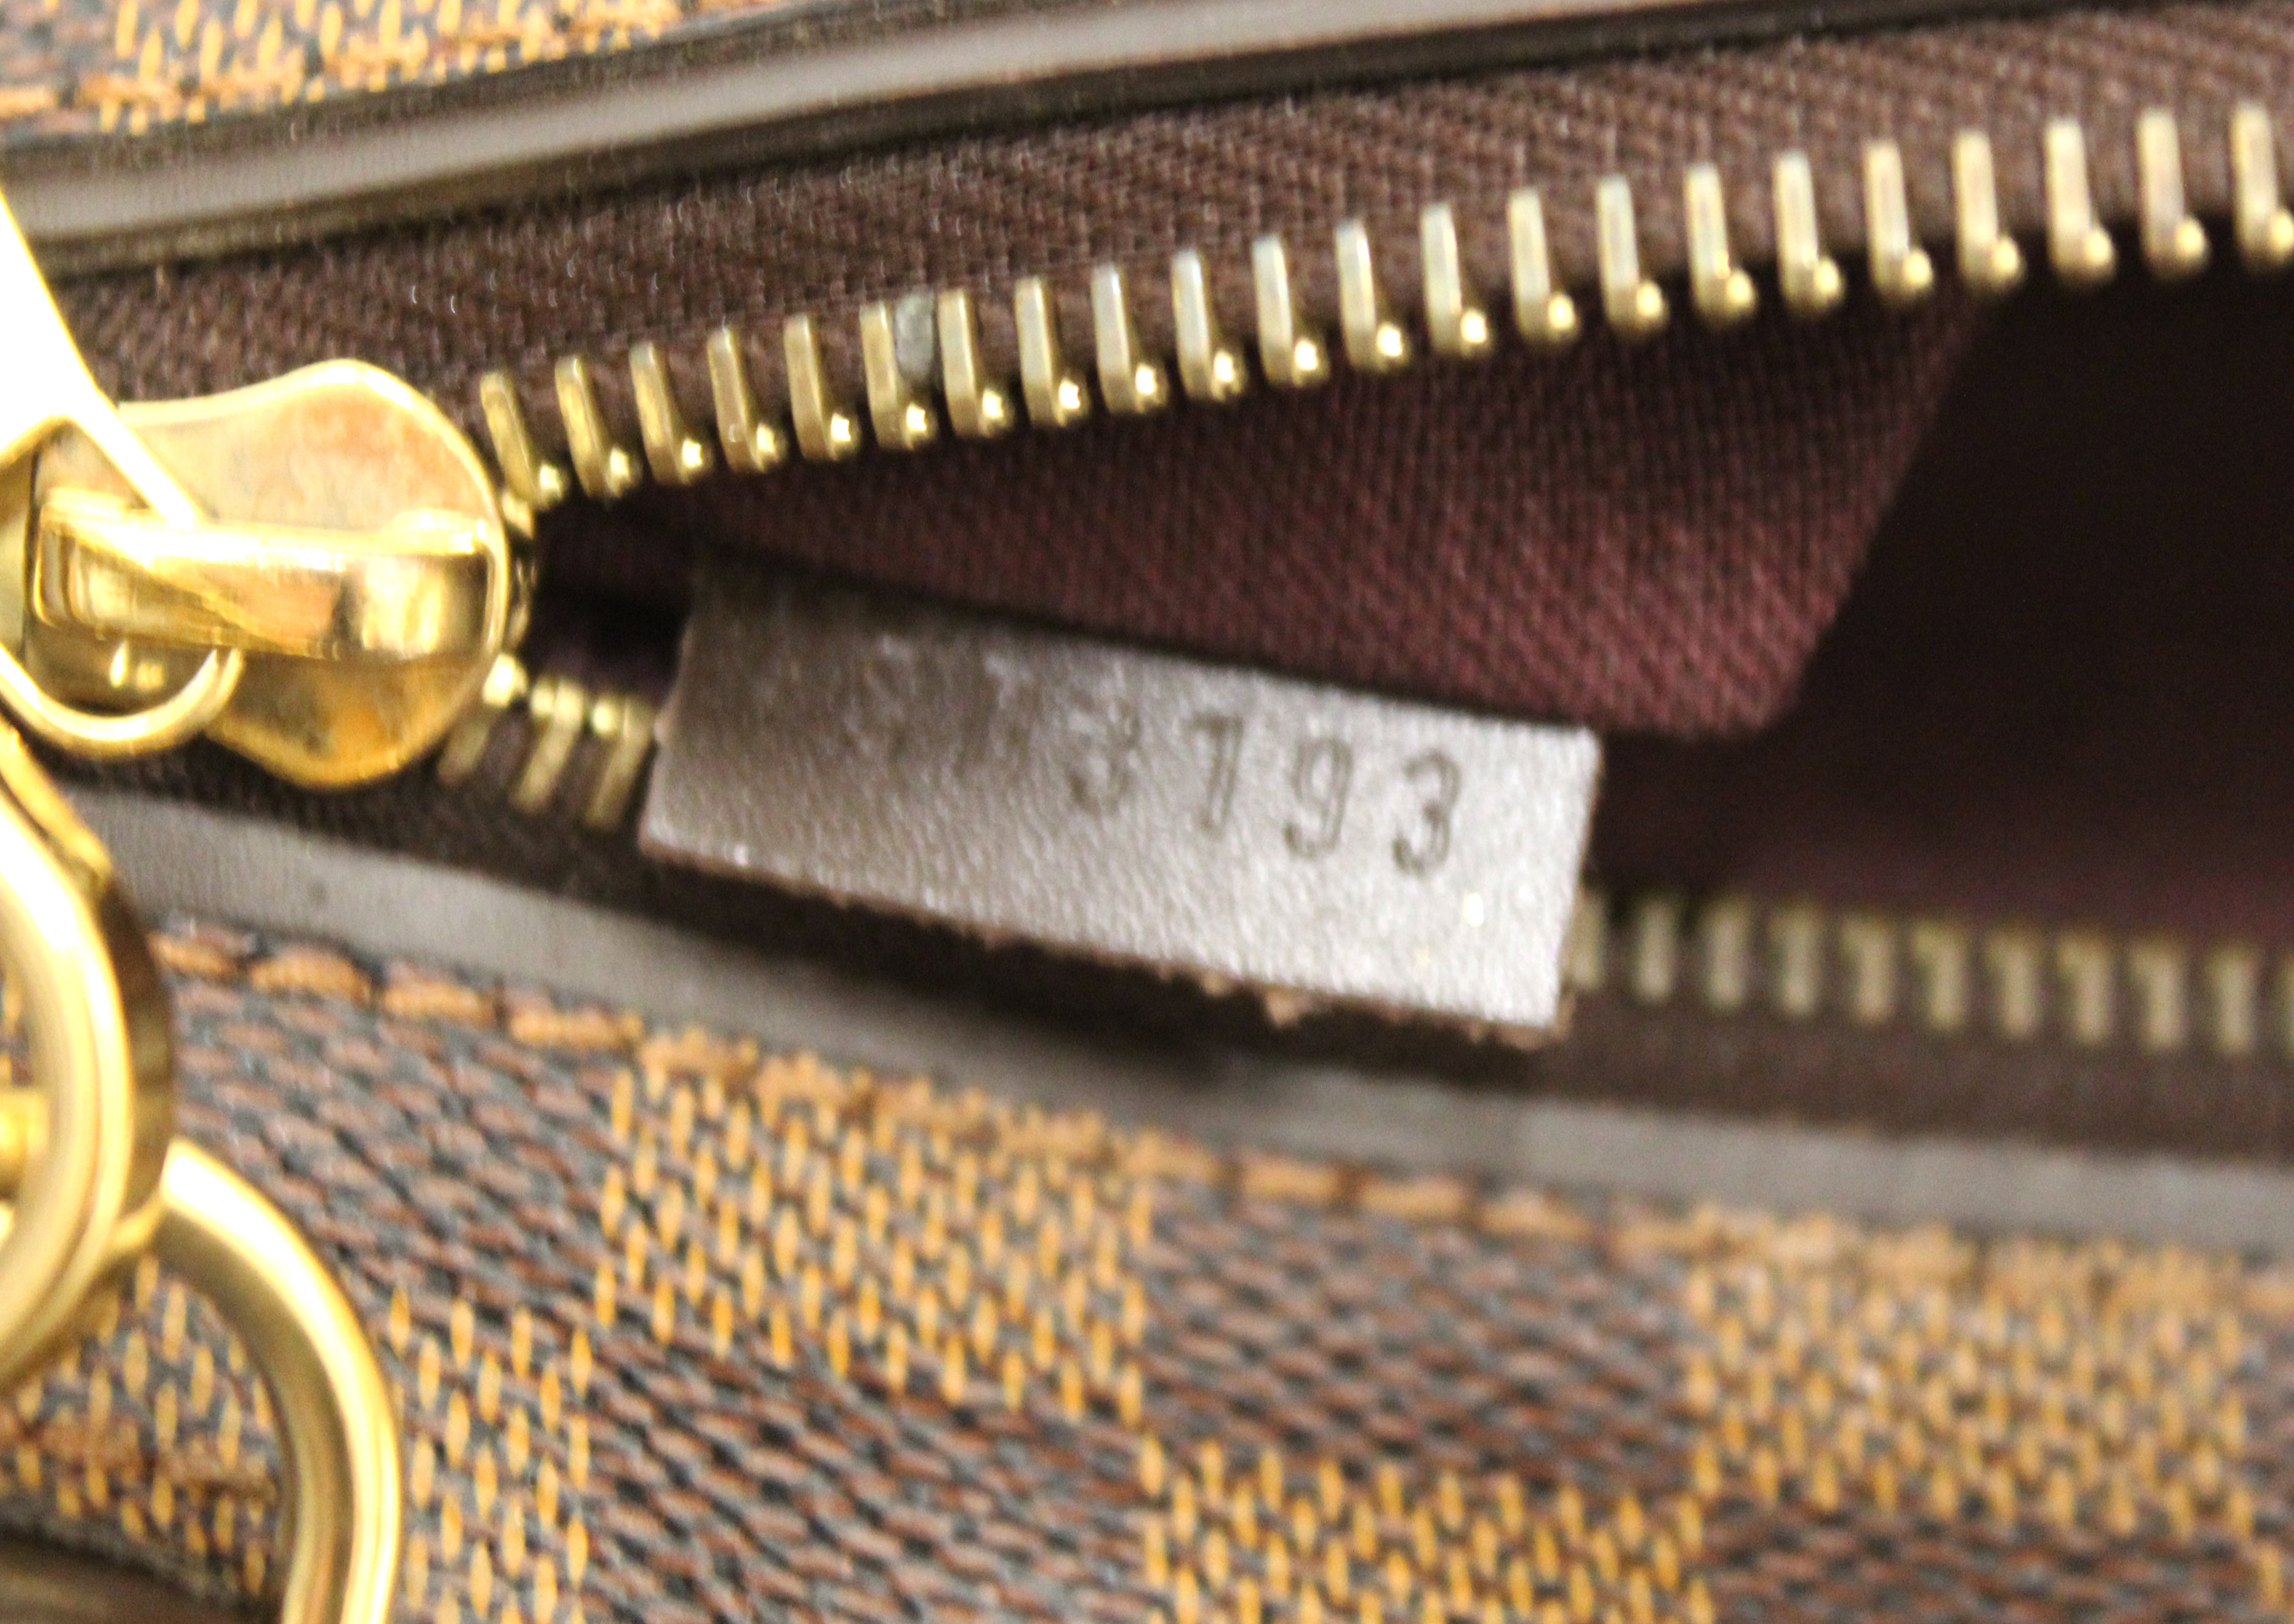 Authentic Louis Vuitton Damier Ebene Hoxton GM Messenger Bag